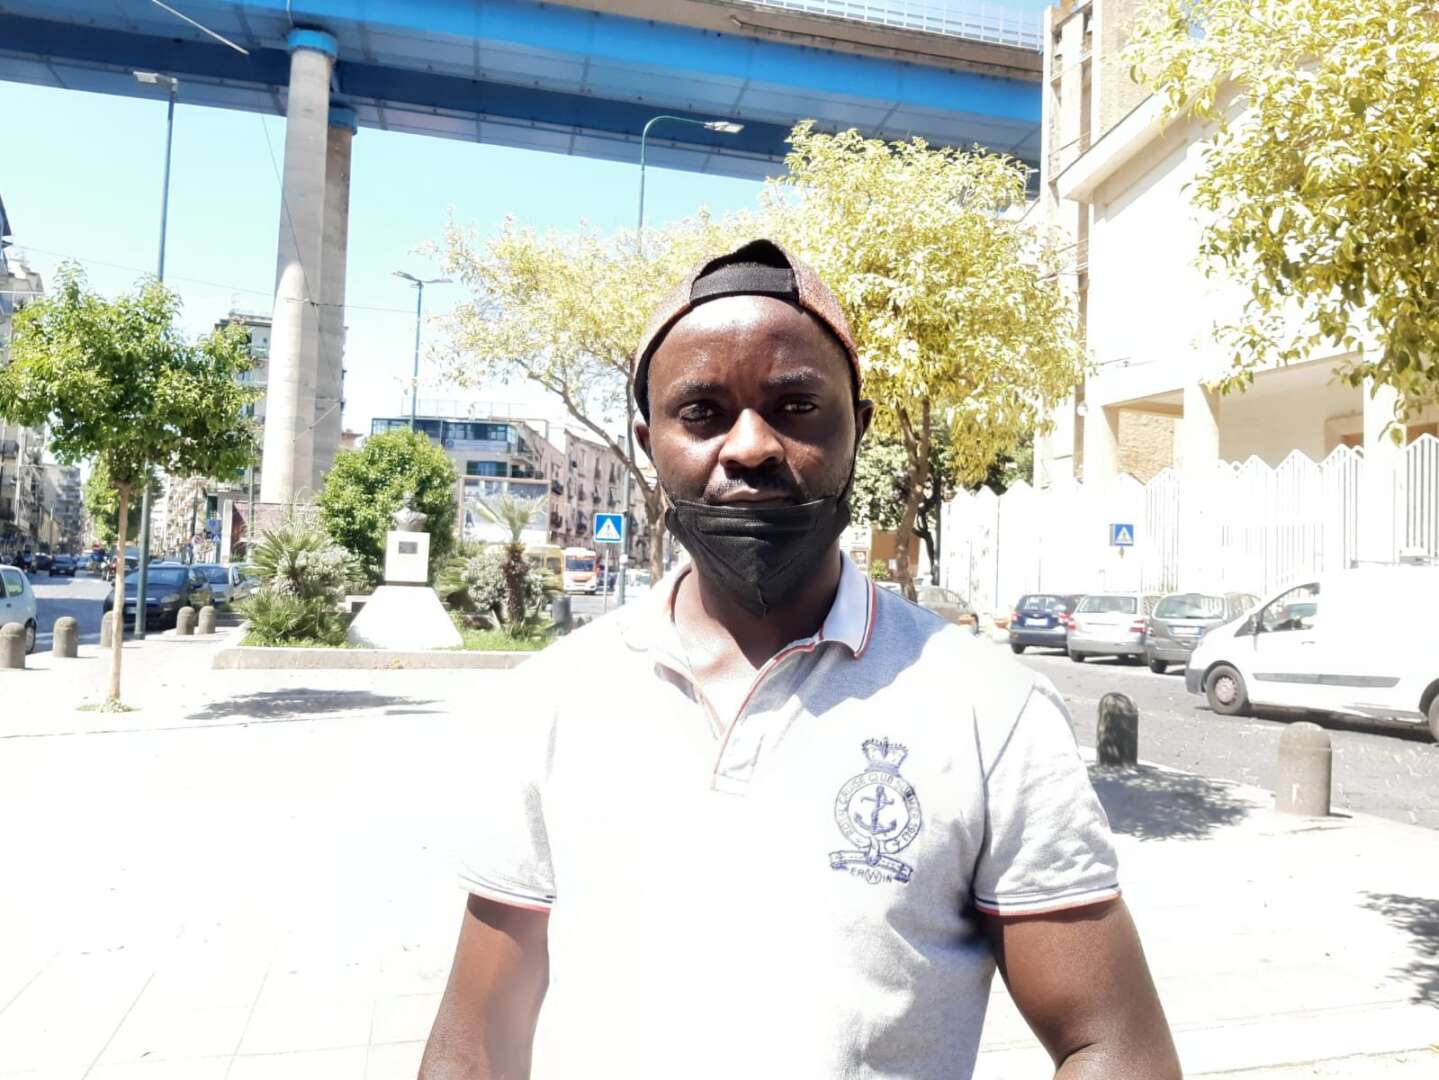 Immigrato ivoriano aggredito mentre va in bici a lavoro: l’analogo fatto tre anni fa